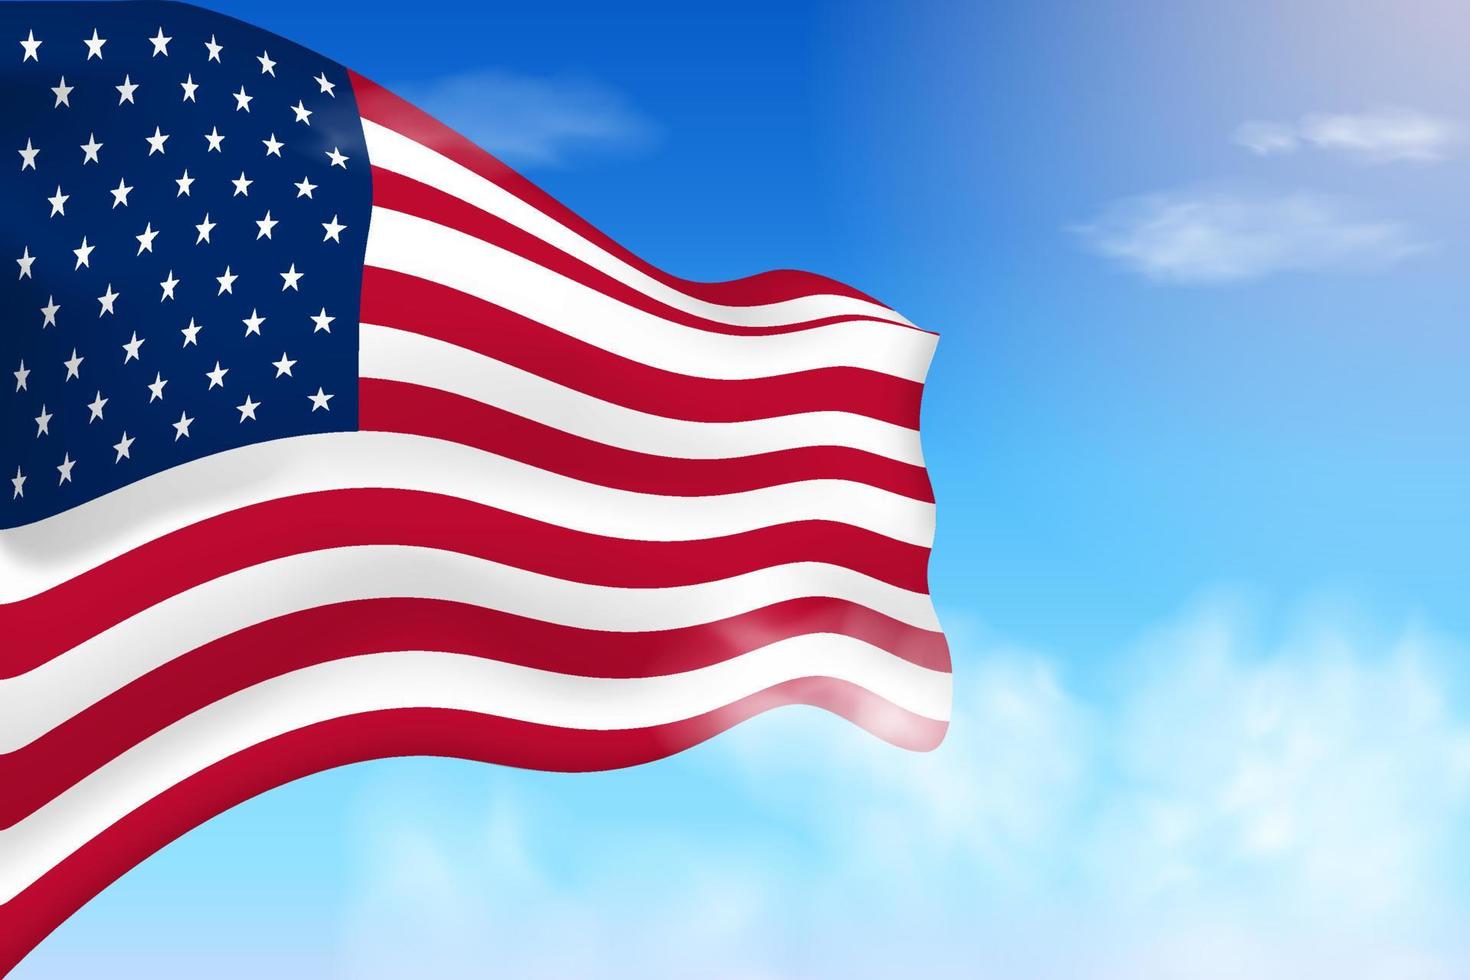 bandiera degli stati uniti tra le nuvole. bandiera vettoriale che sventola nel cielo. illustrazione realistica della bandiera della giornata nazionale. vettore di cielo blu.